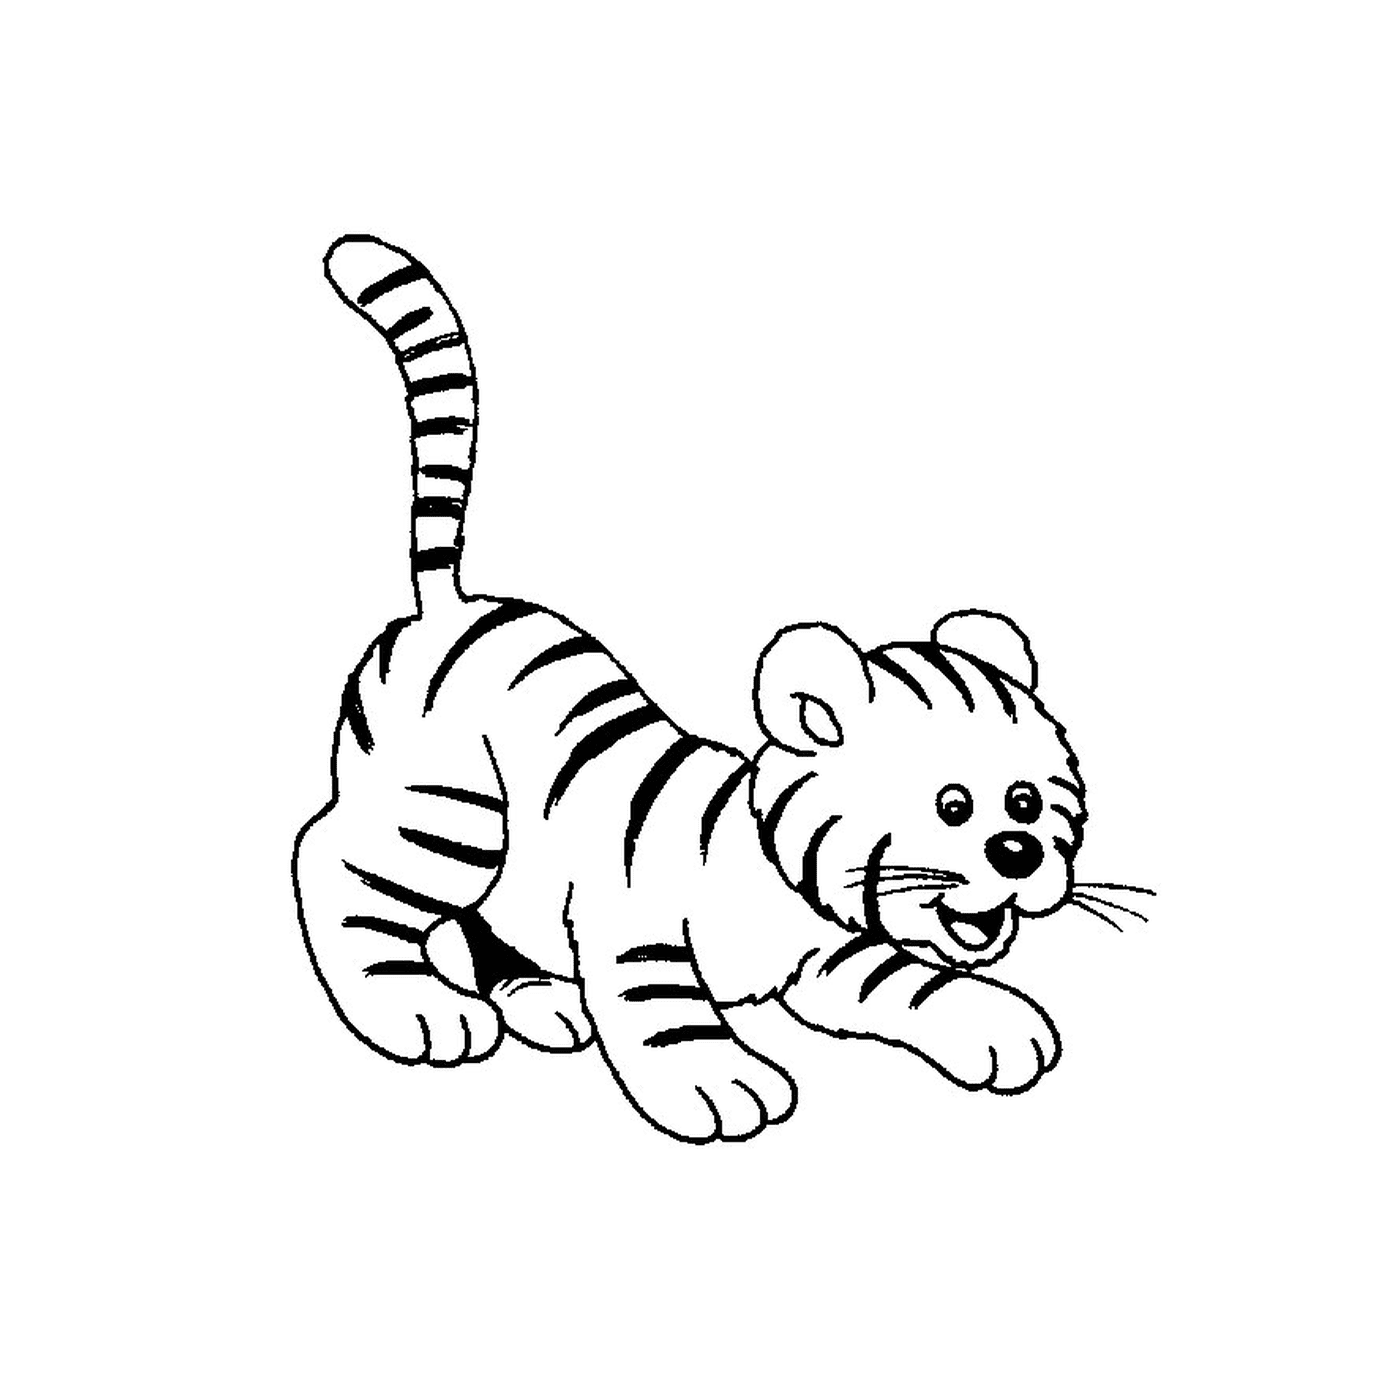  A tiger baby 